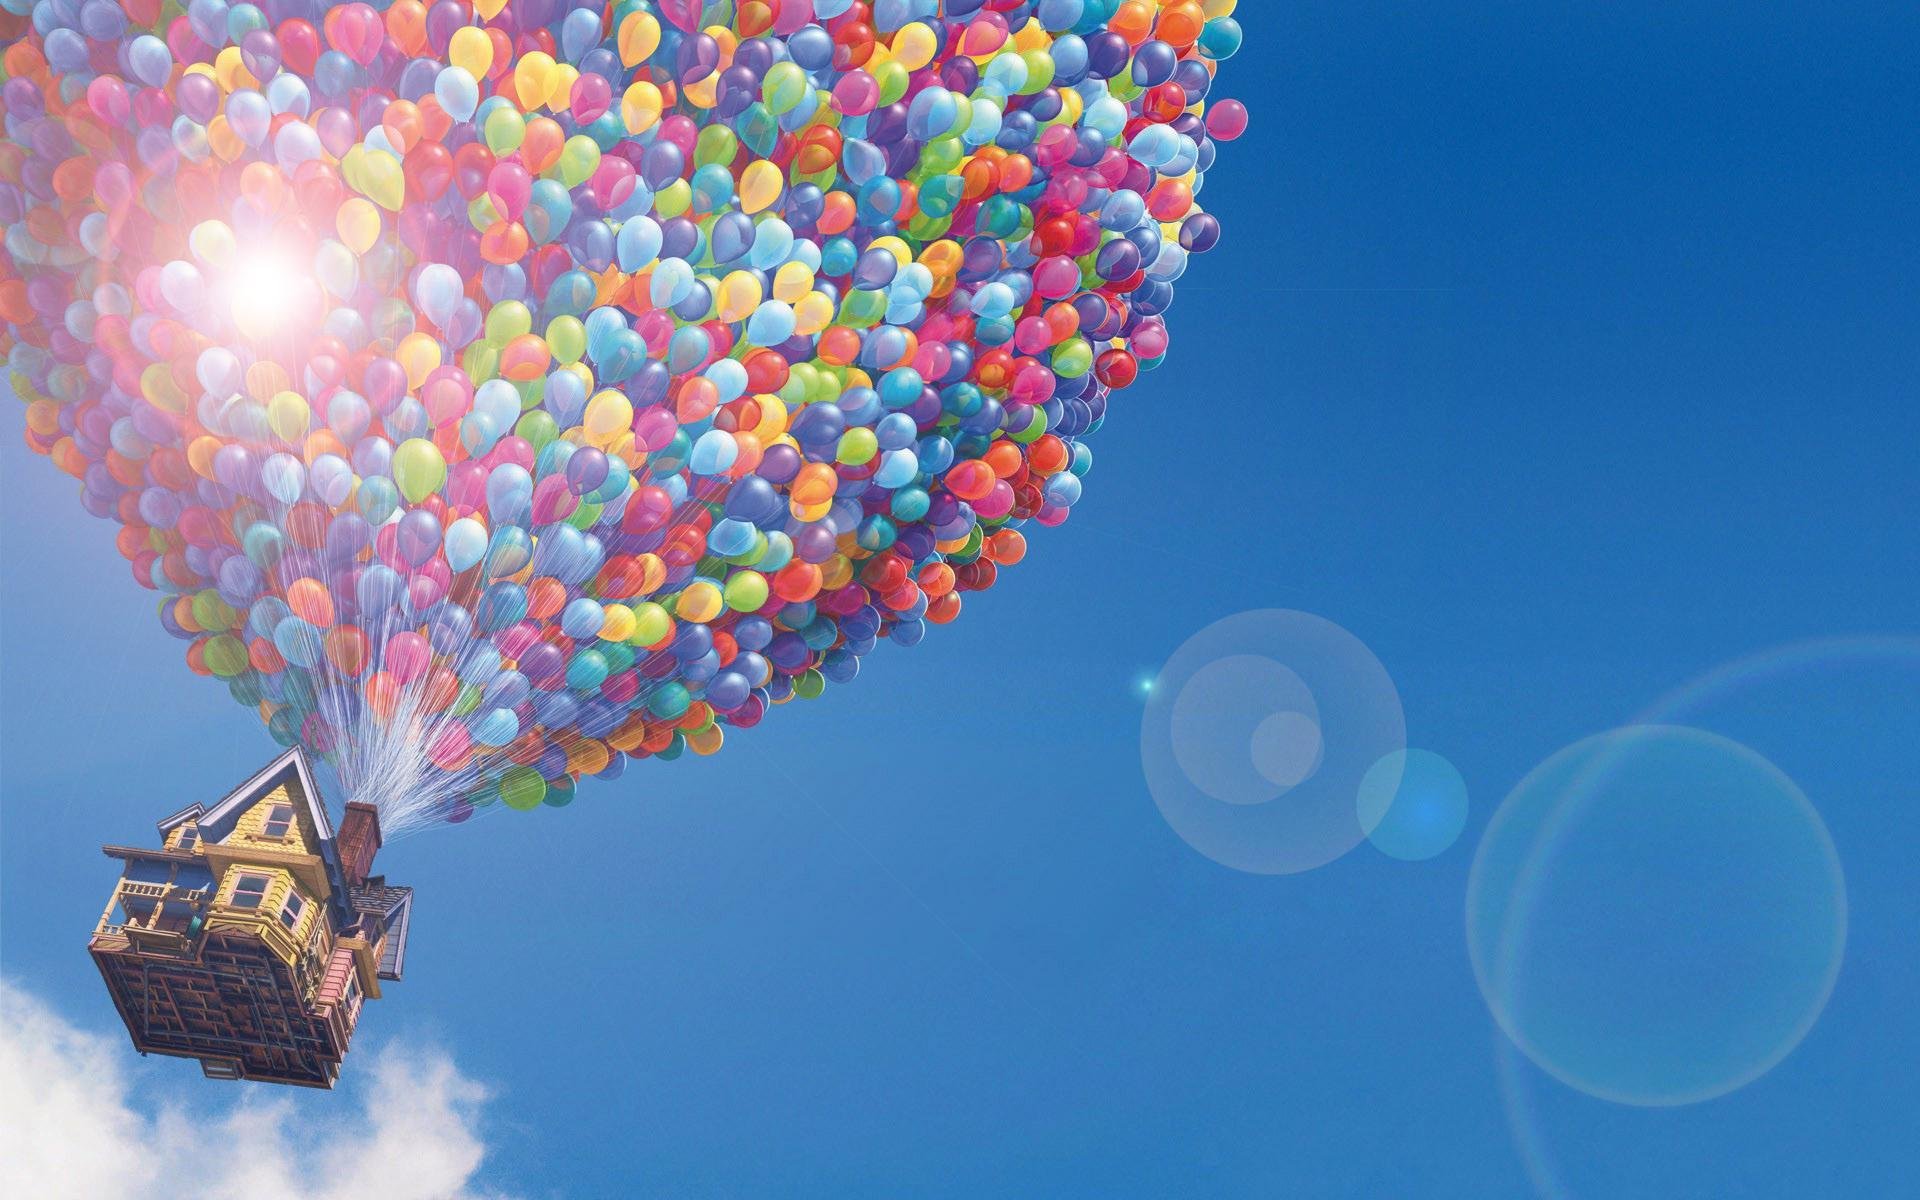 Летающий шарик дома. Воздушные шары. Шарики в небе. Заставка воздушные шары. Фон с воздушными шарами.